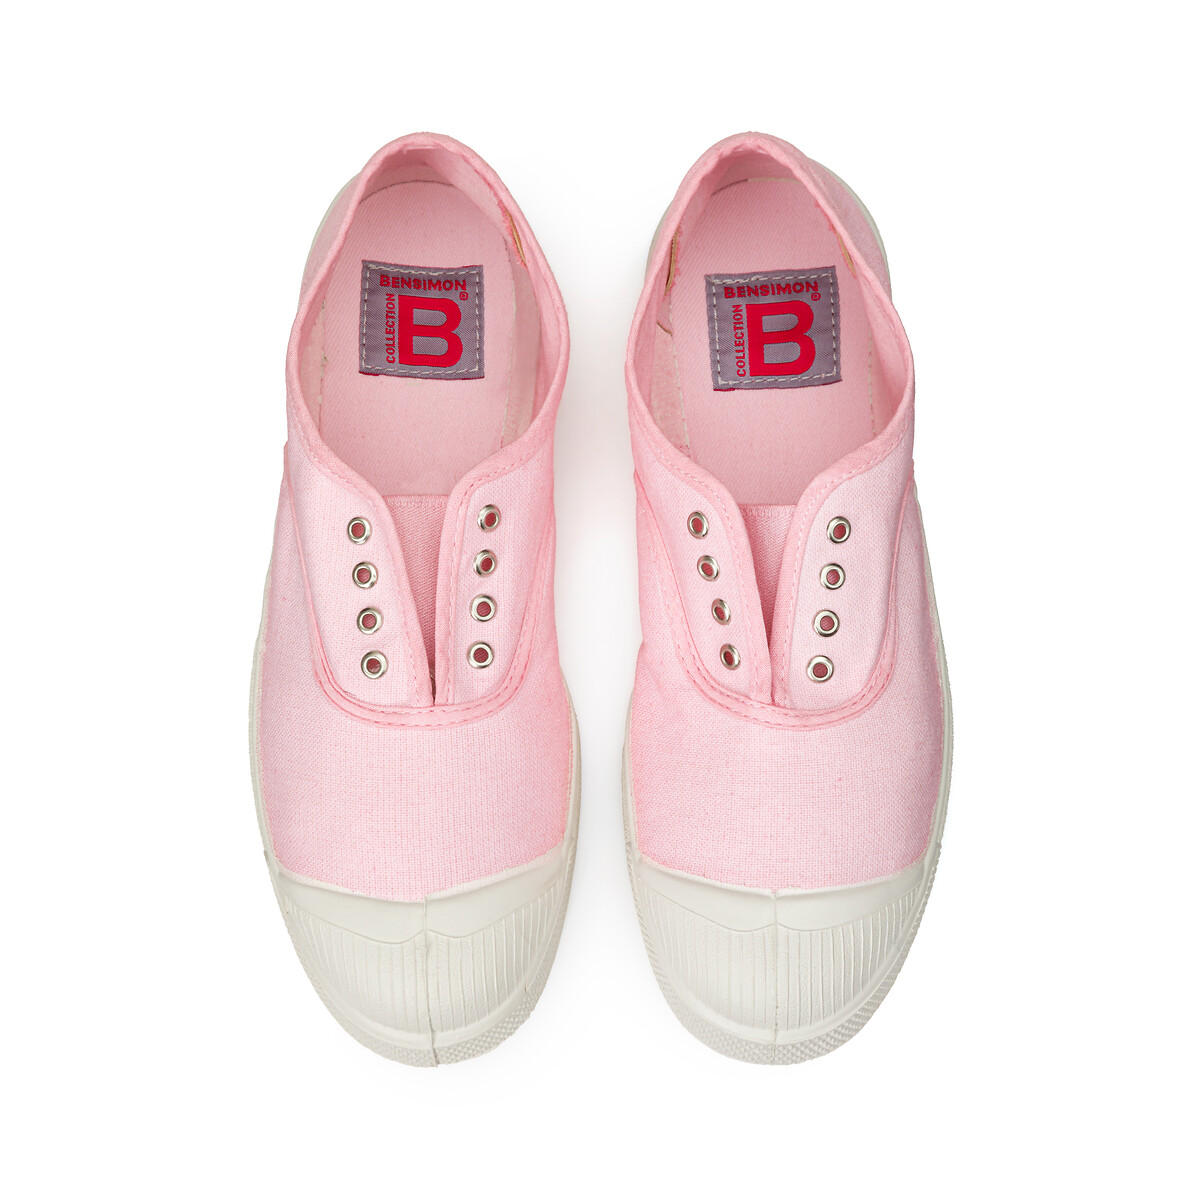 Damen Schuhe Bensimon Damen Sneakers Bensimon Damen Sneakers Bensimon Damen Sneakers BENSIMON 37 pink 